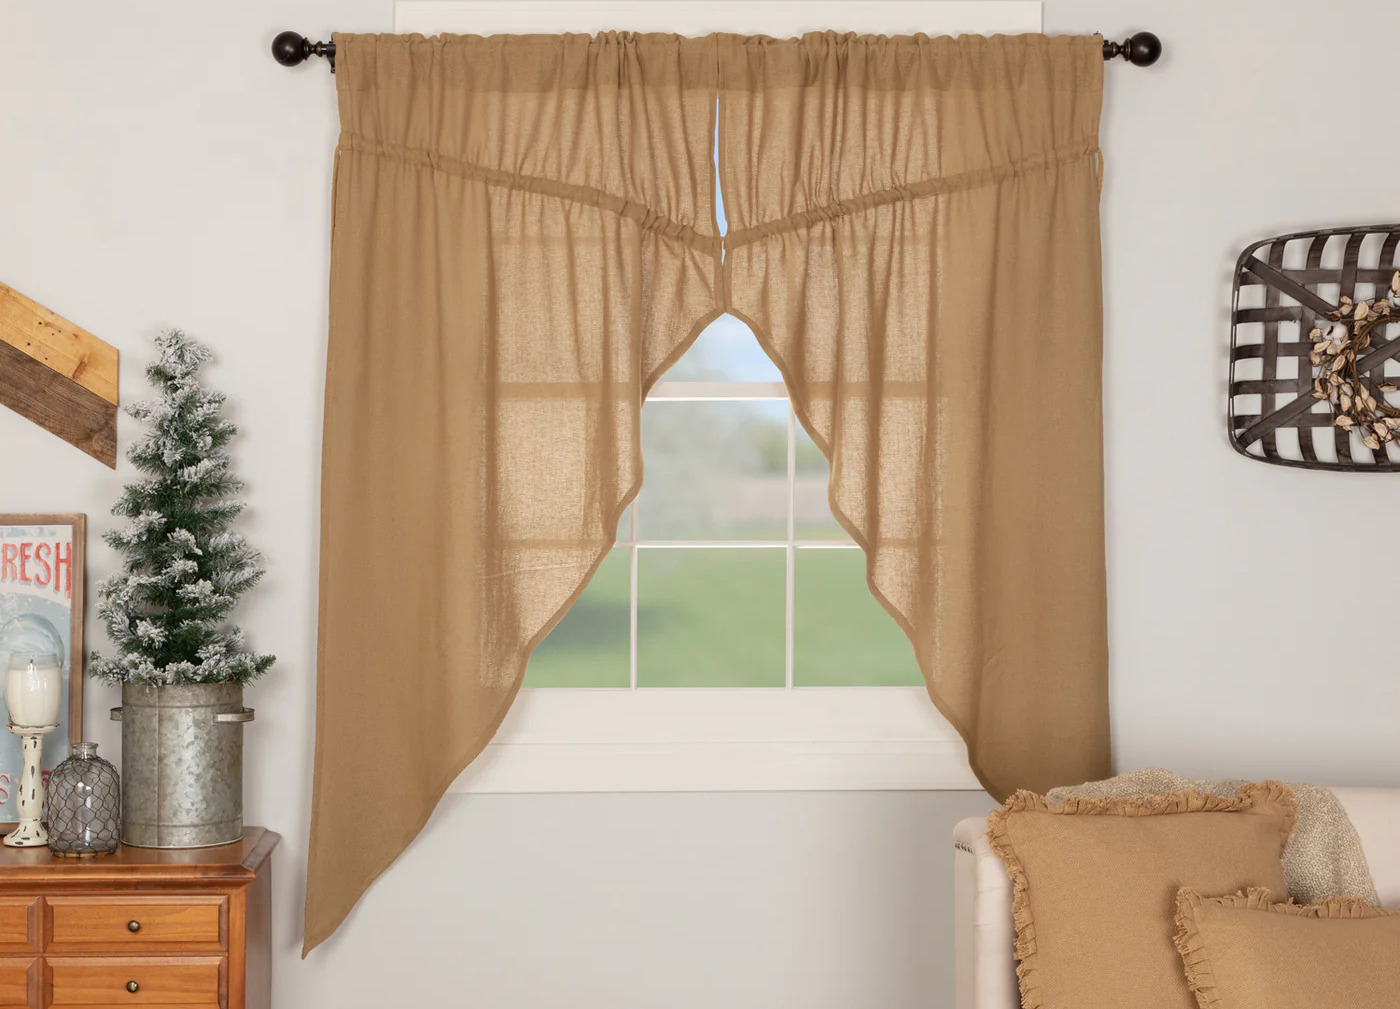 How To Make Prairie Curtains